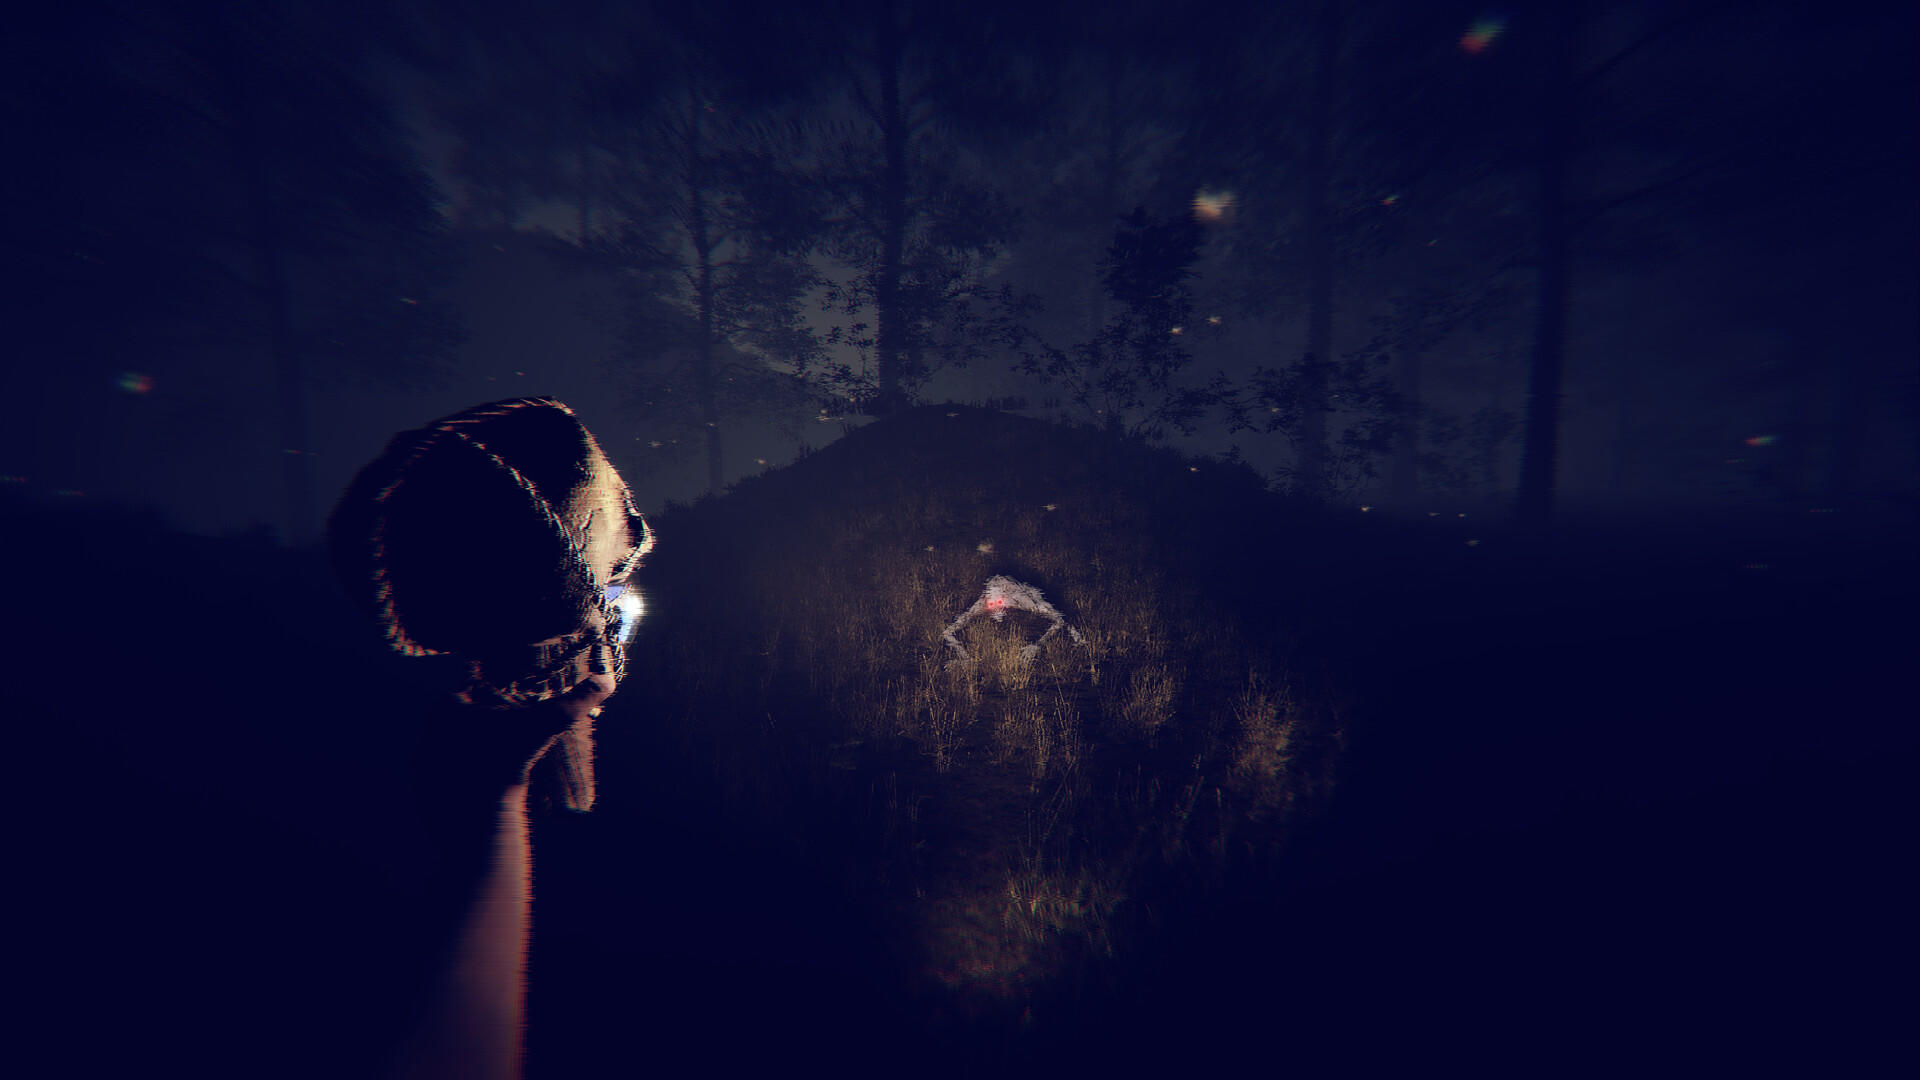 Solitude screenshot game